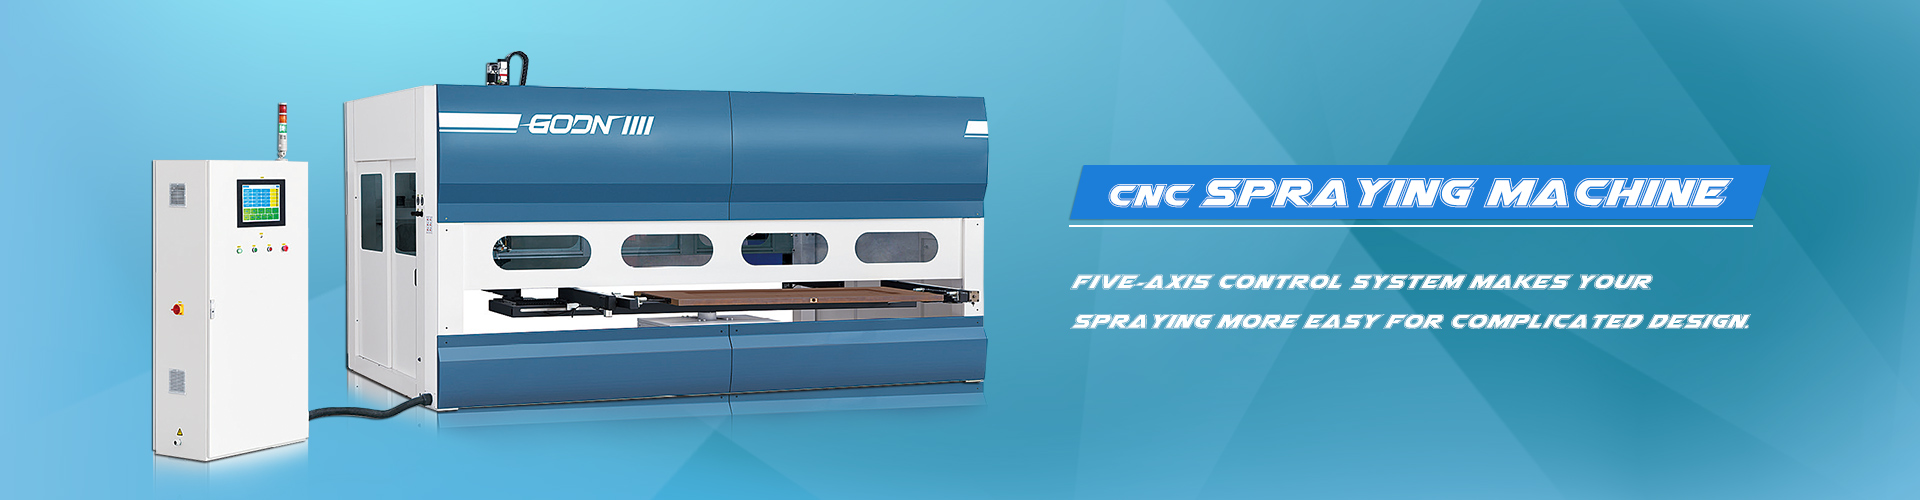 CNC püskürtme makinesi